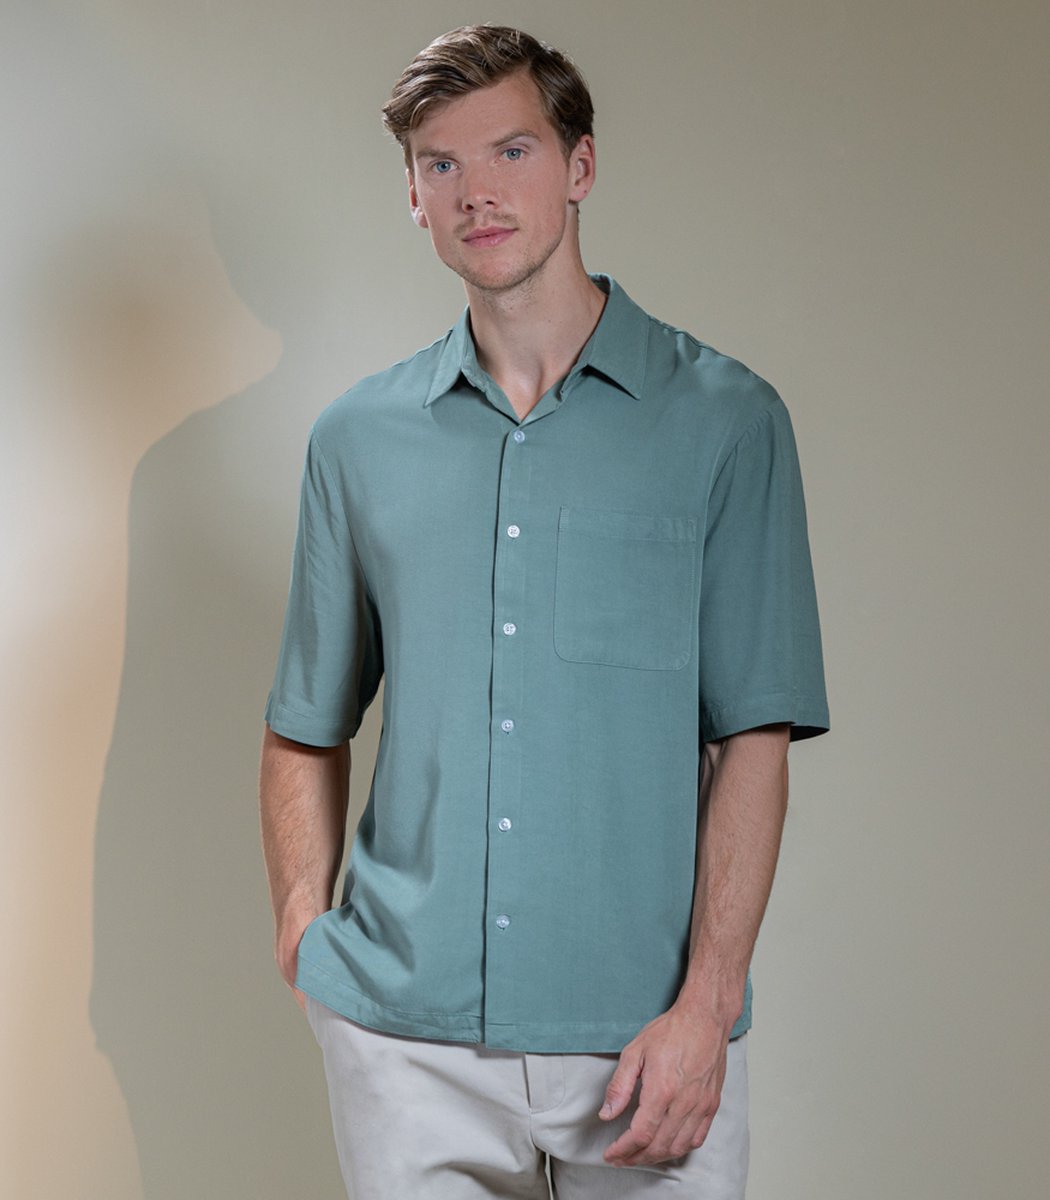 Laurent Vergne - Heren - Bowling Shirt - 100% Viscose - maat L - Slim fit